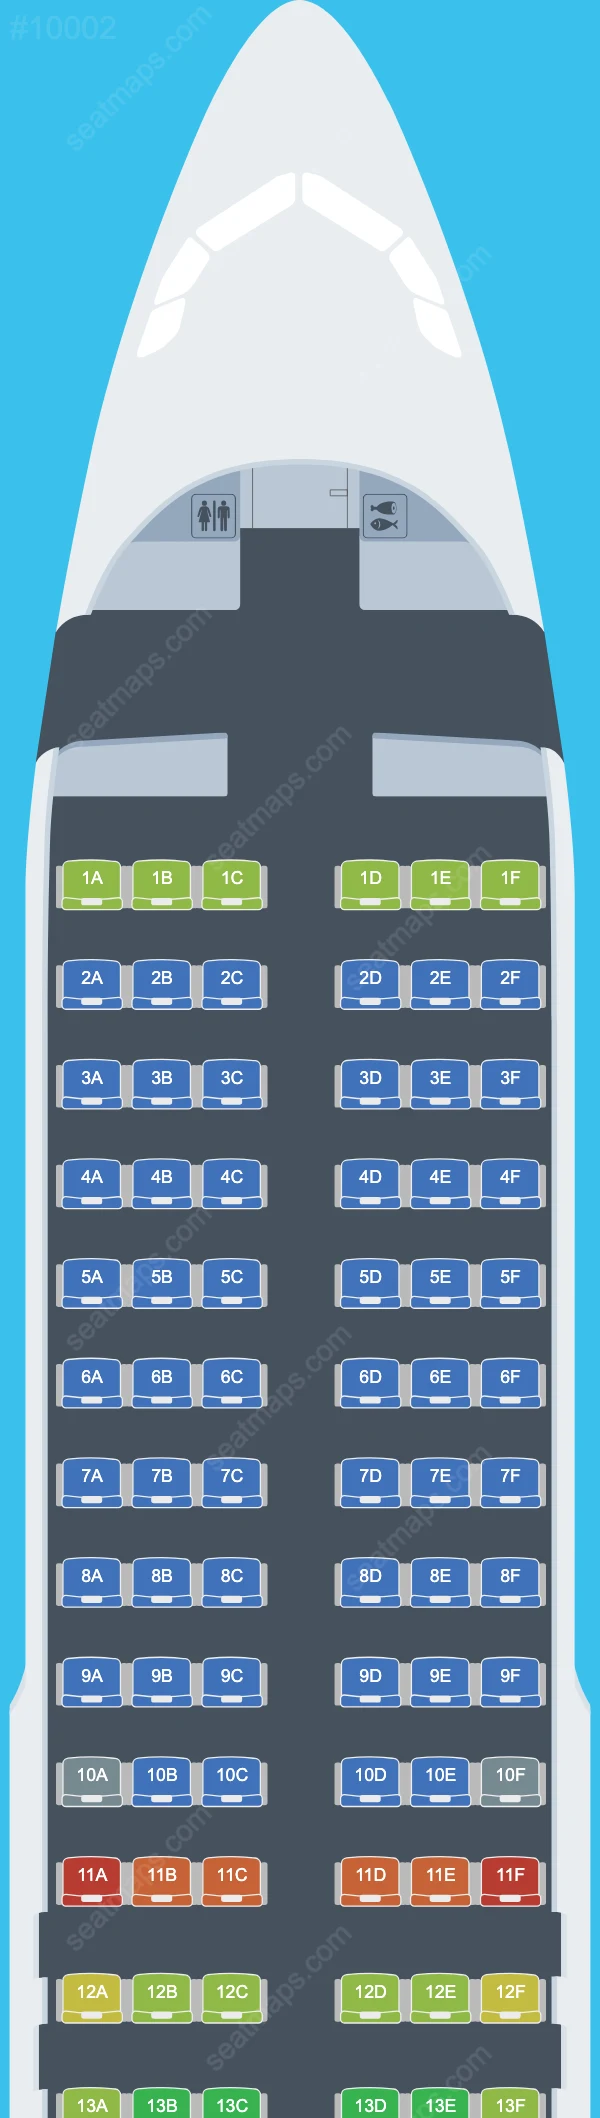 Smartavia Airbus A320 Plan de Salle A320-200neo